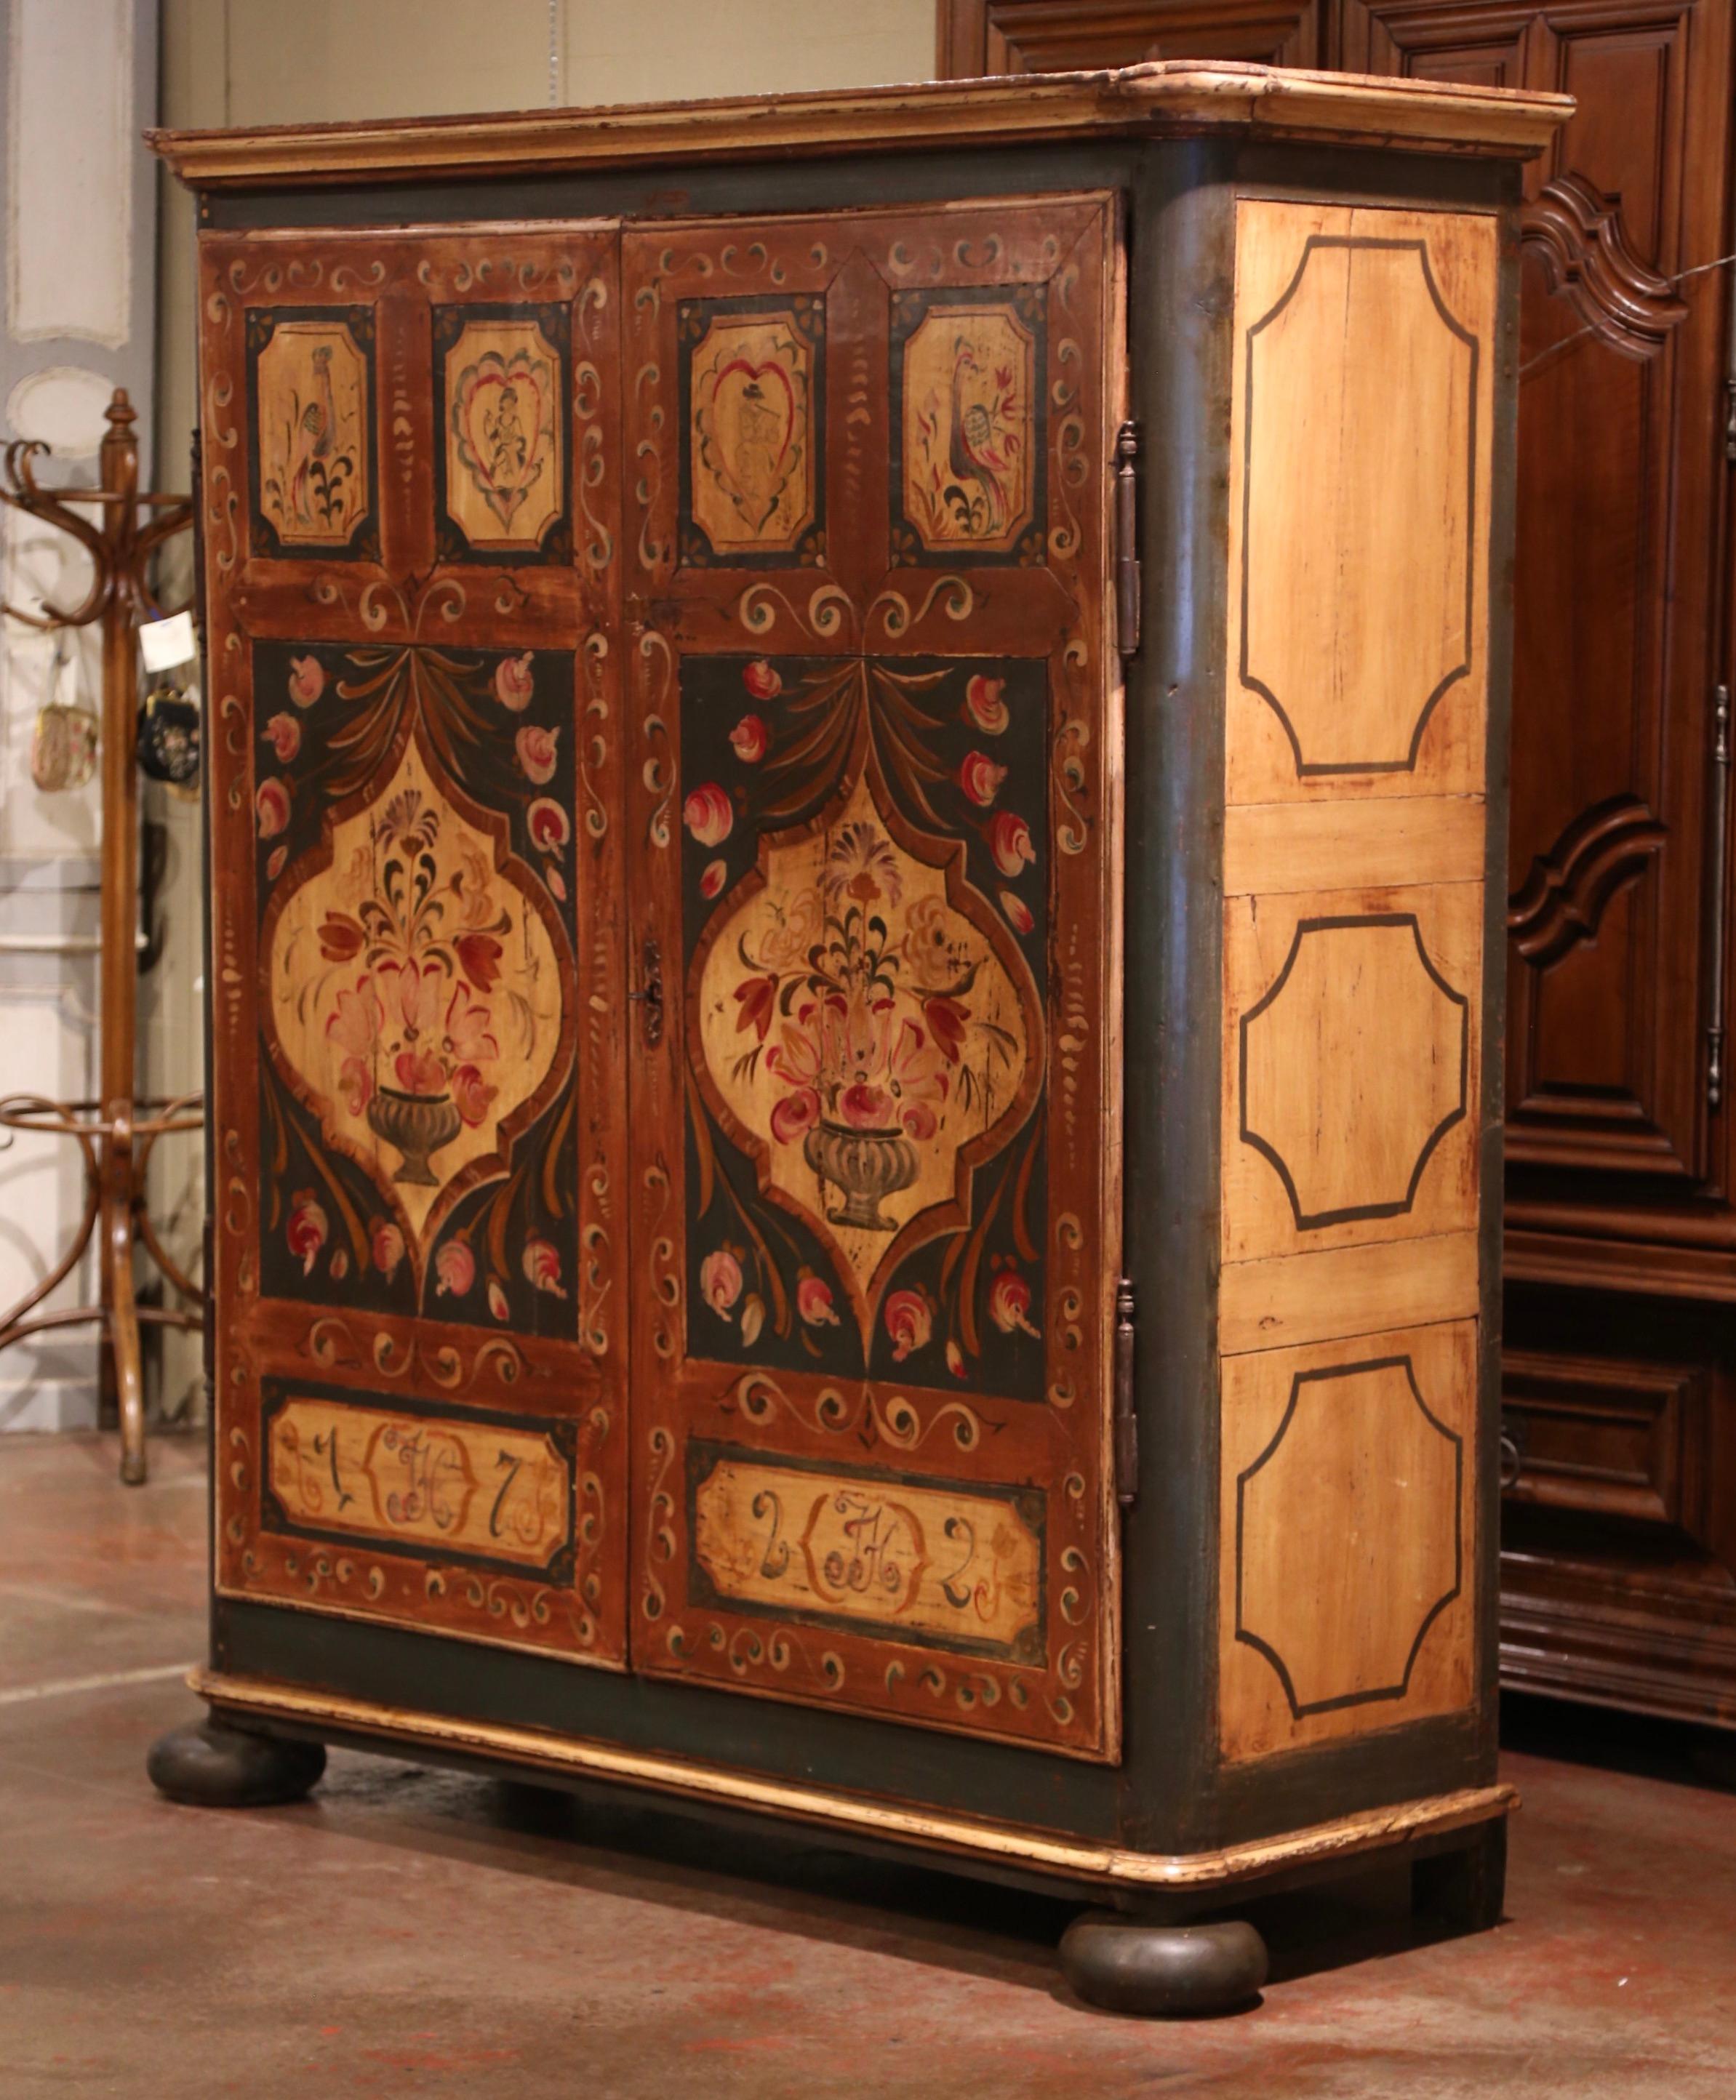 Cachez votre téléviseur dans cette grande armoire ancienne peinte et colorée. Fabriqué dans la région Alsace-Lorraine vers 1820, ce meuble repose sur des pieds avant en forme de chignon, sur un tablier droit, et présente une couronne décorative